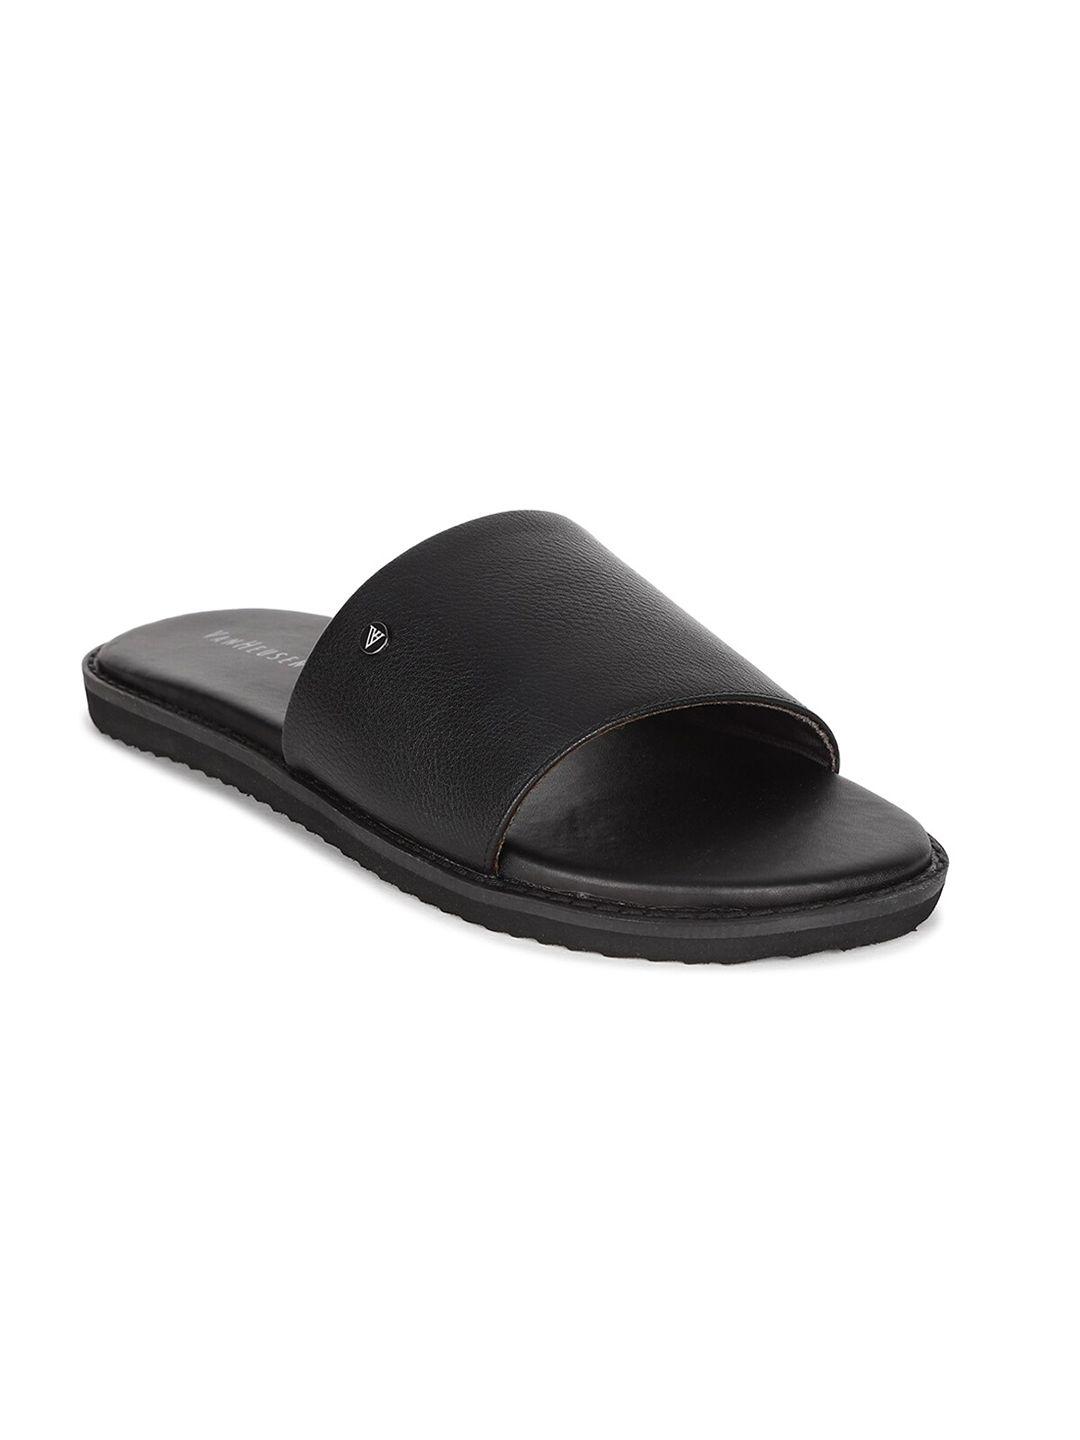 van heusen men black leather comfort sandals